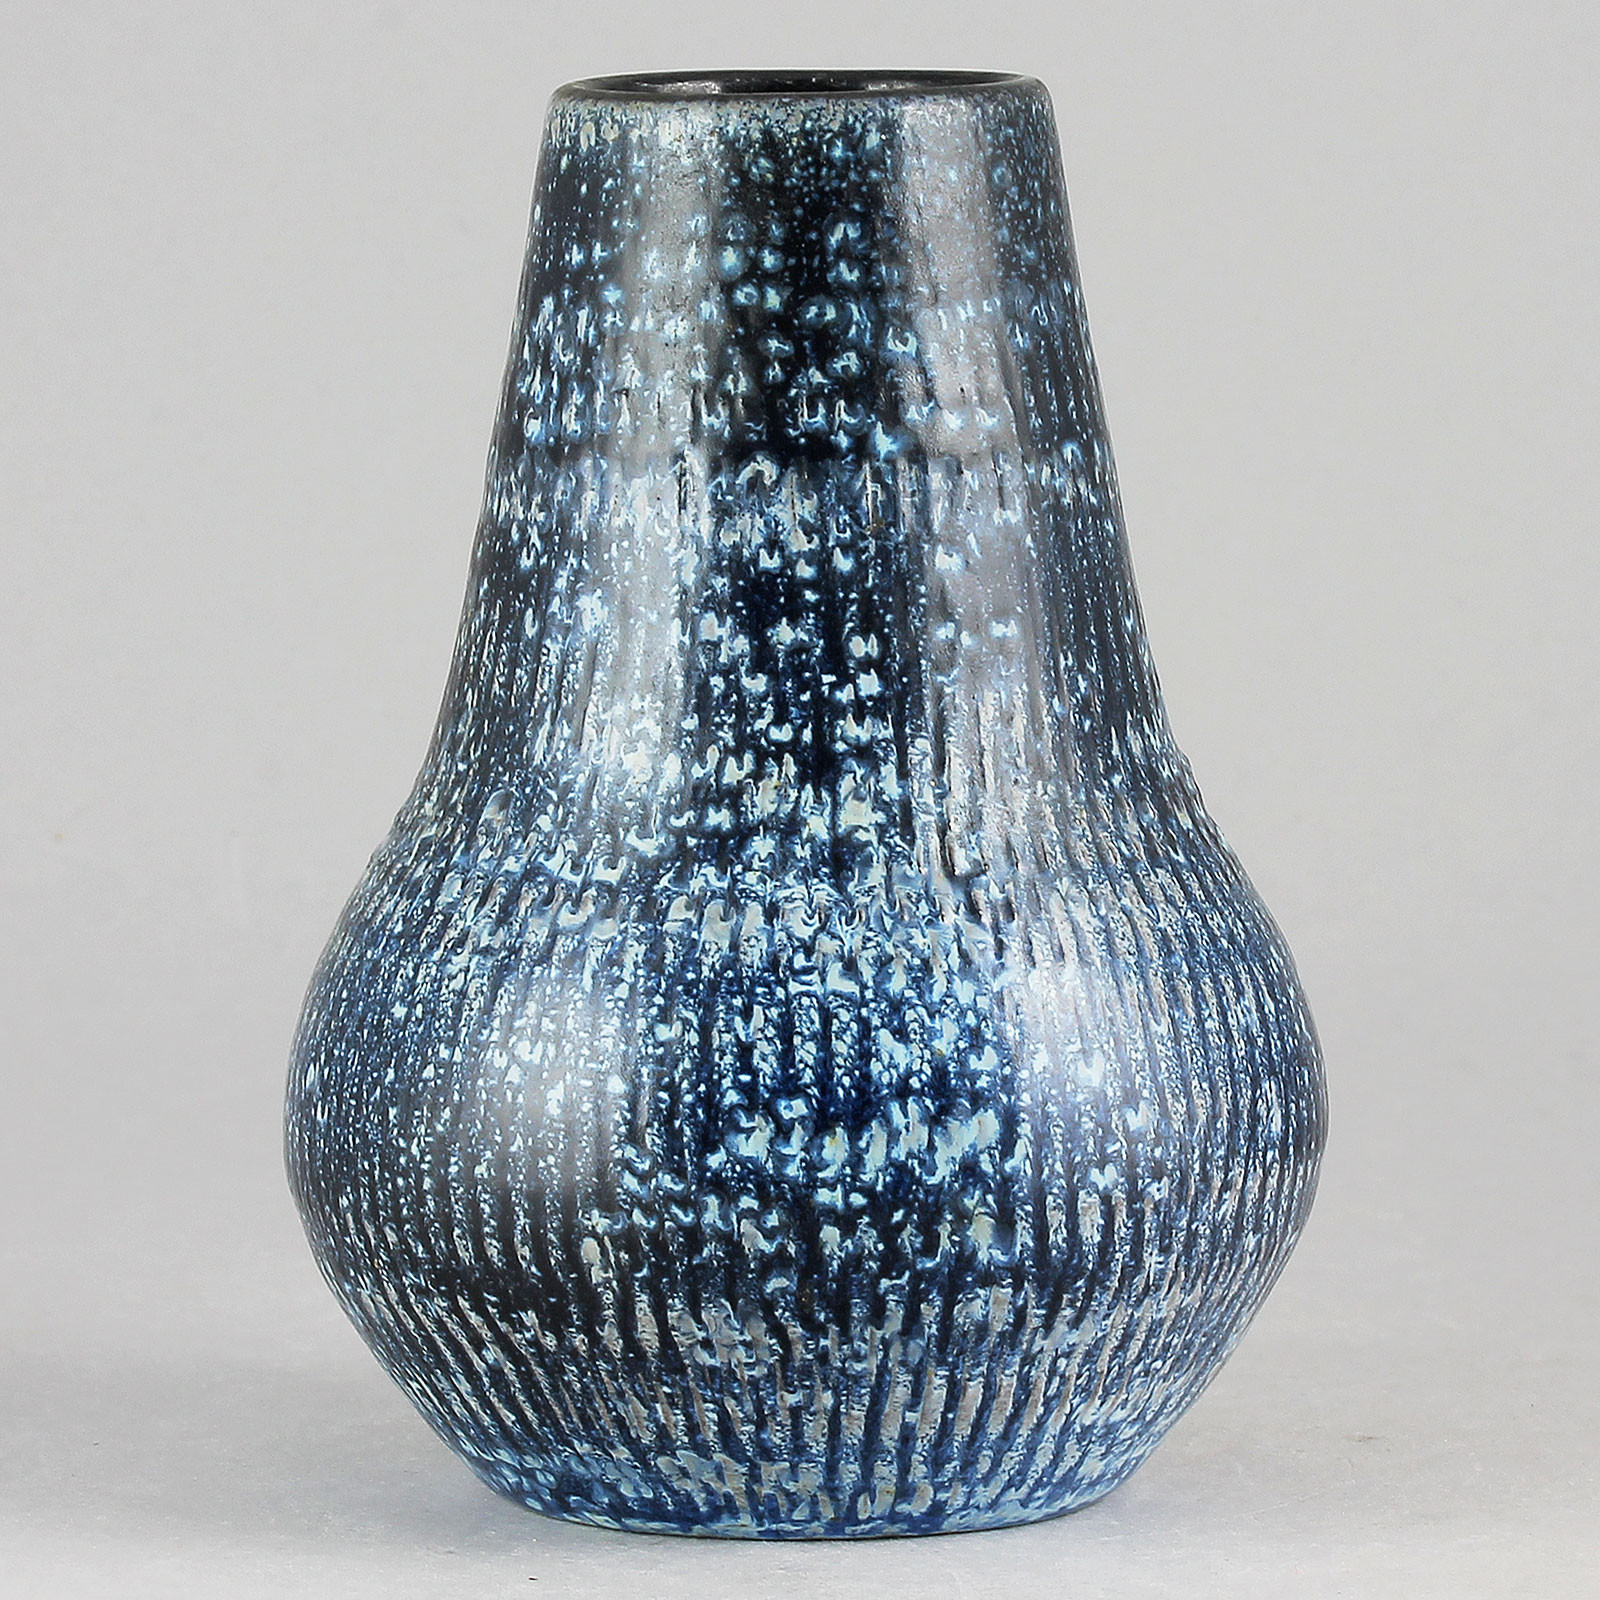 25 Fabulous Light Blue Ceramic Vase 2024 free download light blue ceramic vase of ingrid atterberg fulvia 1962 brilliant blue relief vase 11 cm regarding 162256811 origpic 6f7541